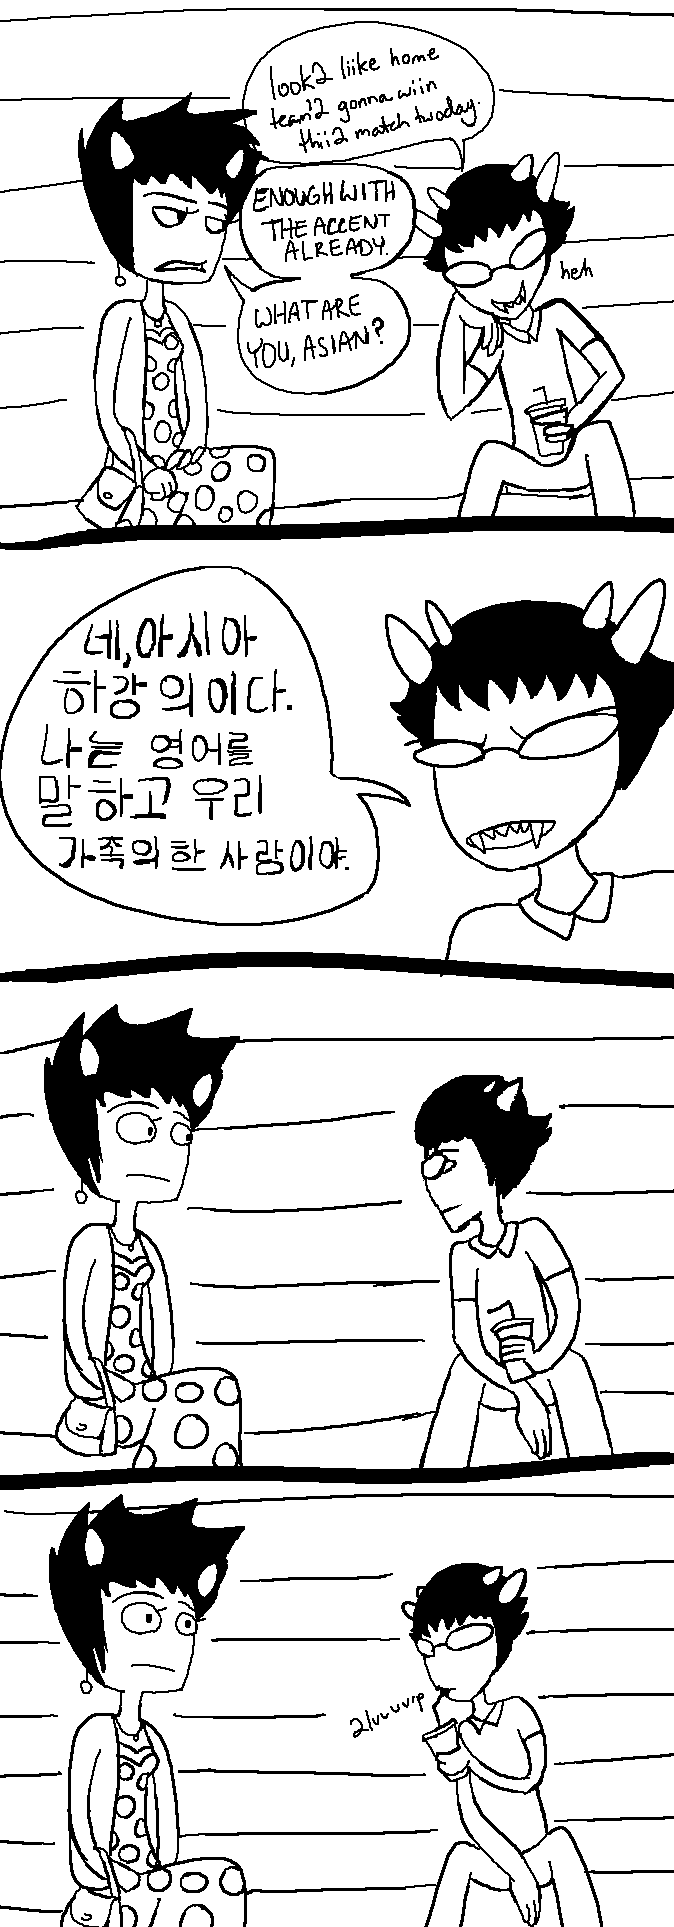 calamityjane comic crossdressing familystuck grayscale karkat_vantas language:korean sollux_captor